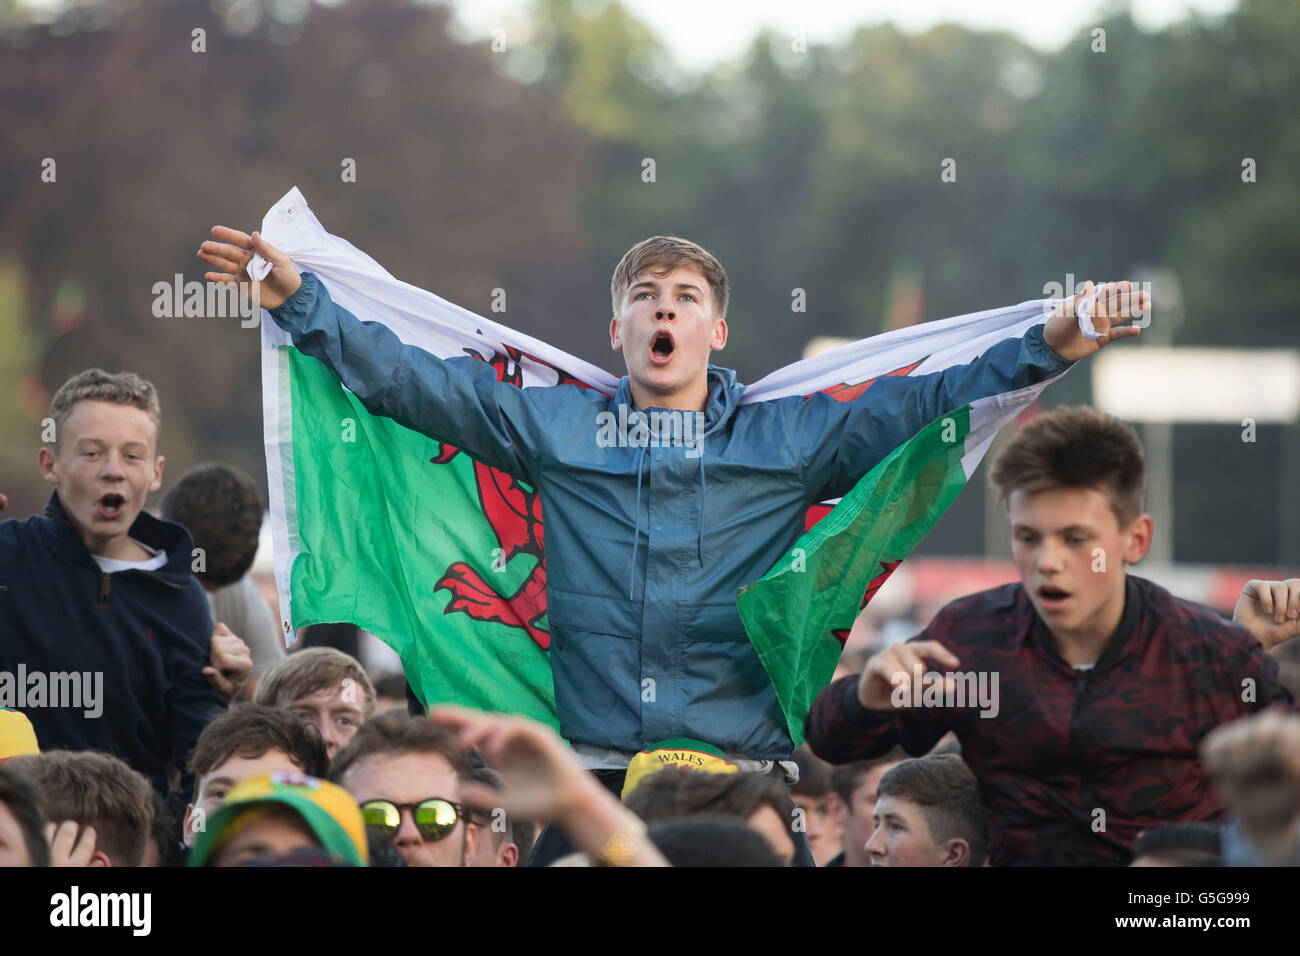 Les amateurs de football du Pays de Galles au Pays de Galles partisans Fan Zone dans Cooper's Field, Cardiff, pour l'Euro 2016 Pays de Galles v Russie jeu. Banque D'Images